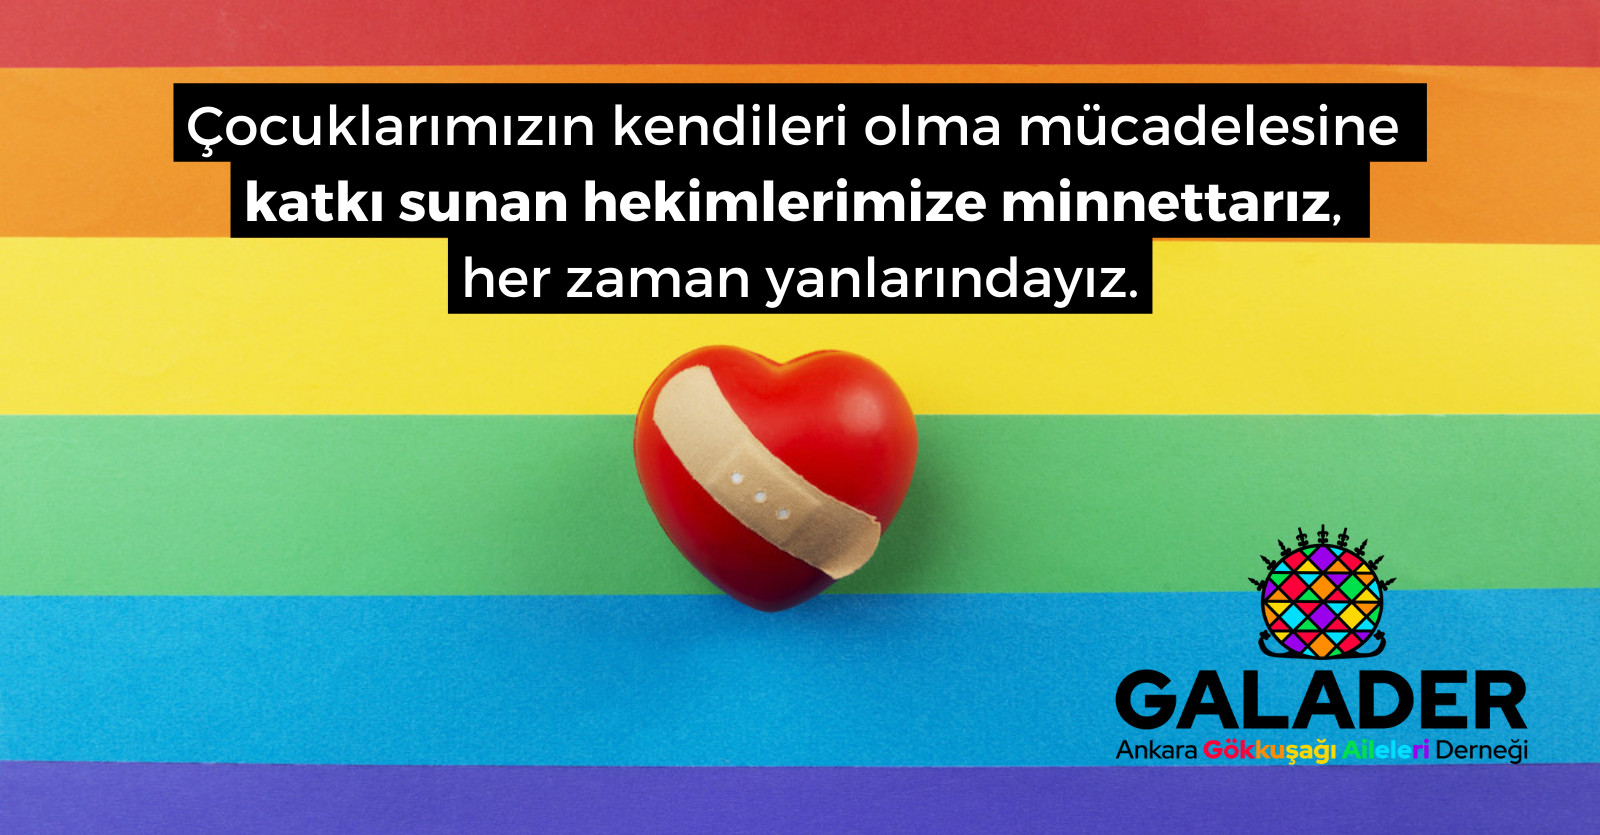 GALADER: Ellerinizi hekimlerimizin üzerinden çekin, hekimlerimizin yanındayız! | Kaos GL - LGBTİ+ Haber Portalı Haber